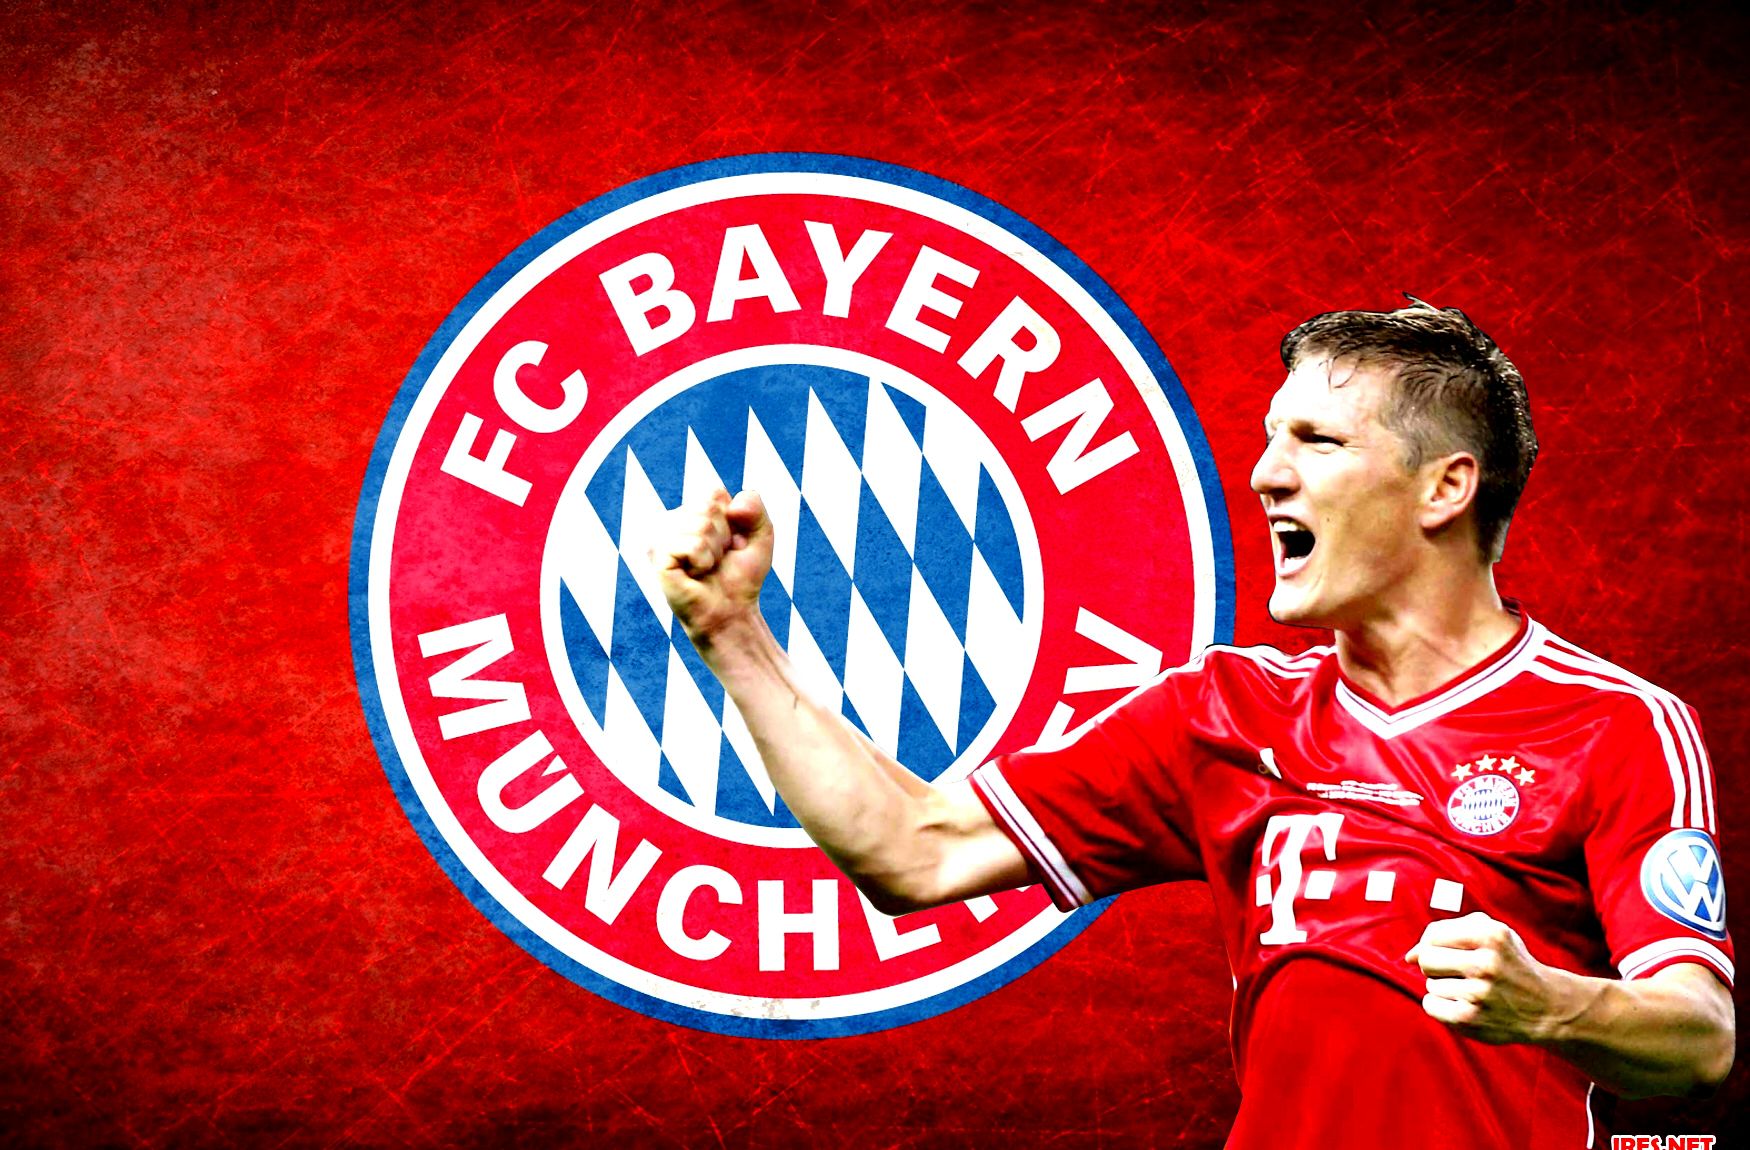 Bayern Munchen - Bastian Schweinsteiger Wallpaper by wolodin